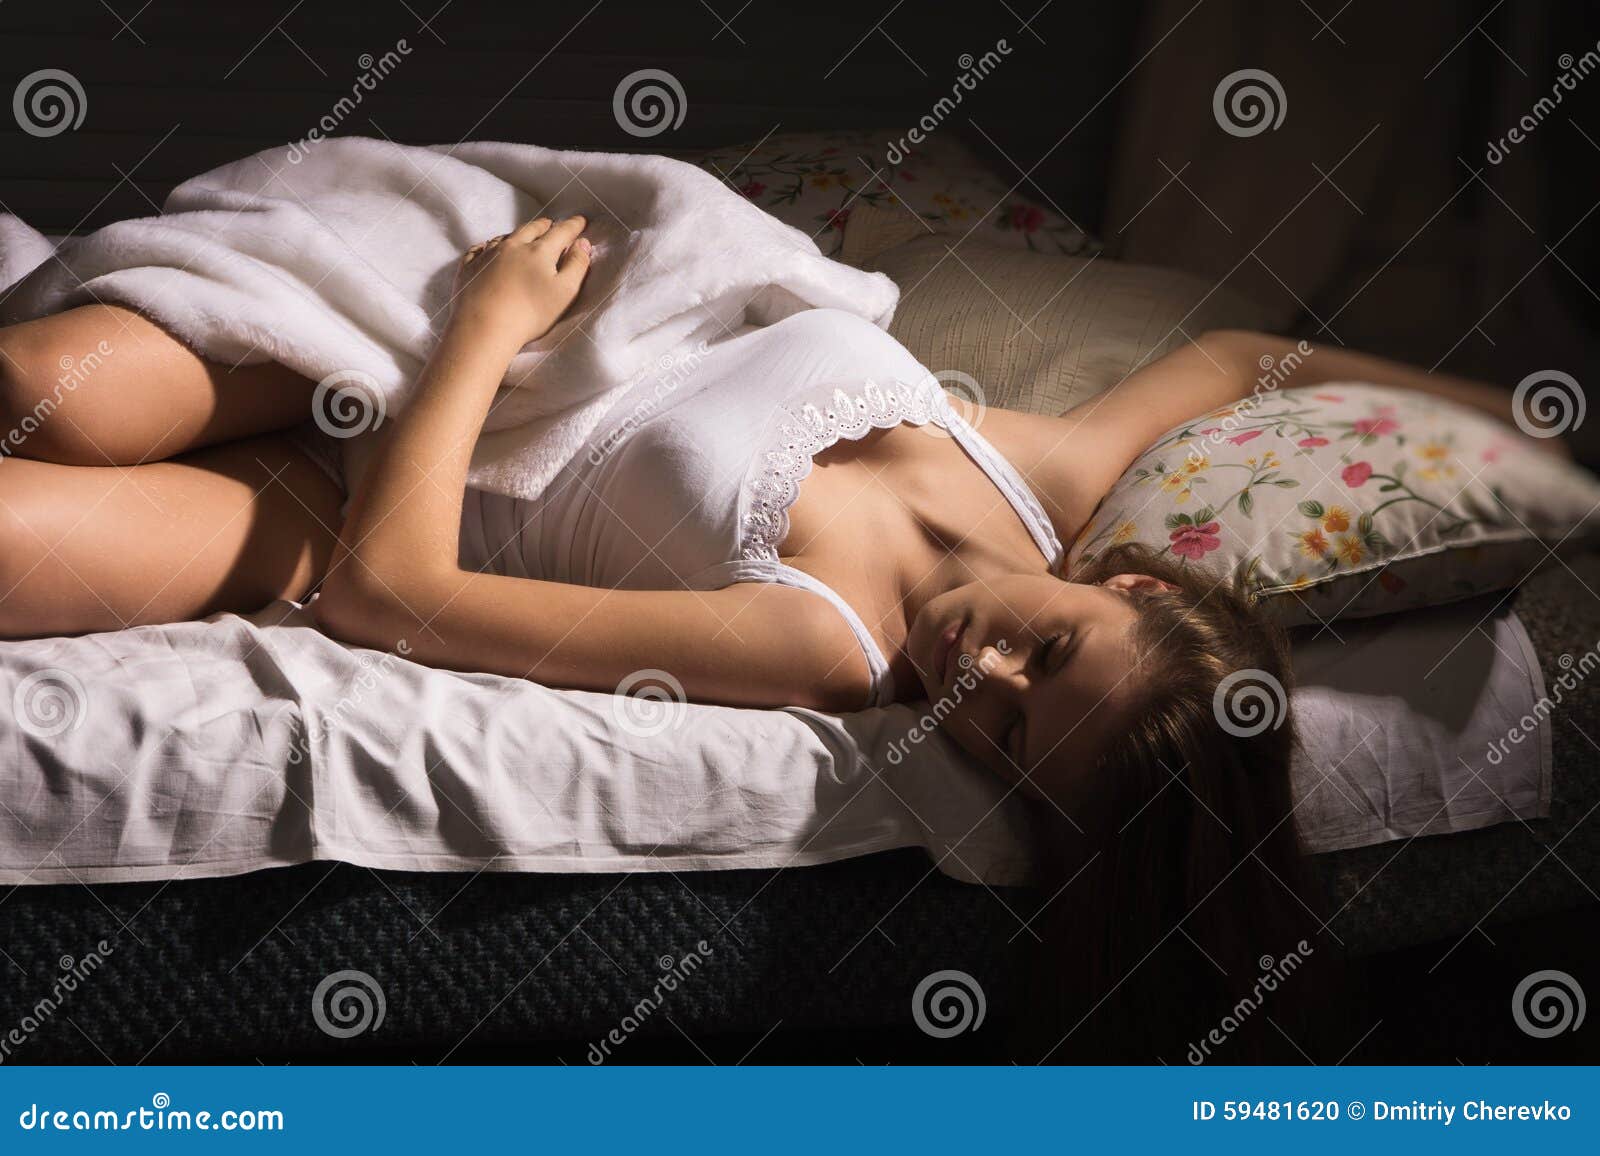 голая сестра в постели спит фото 42